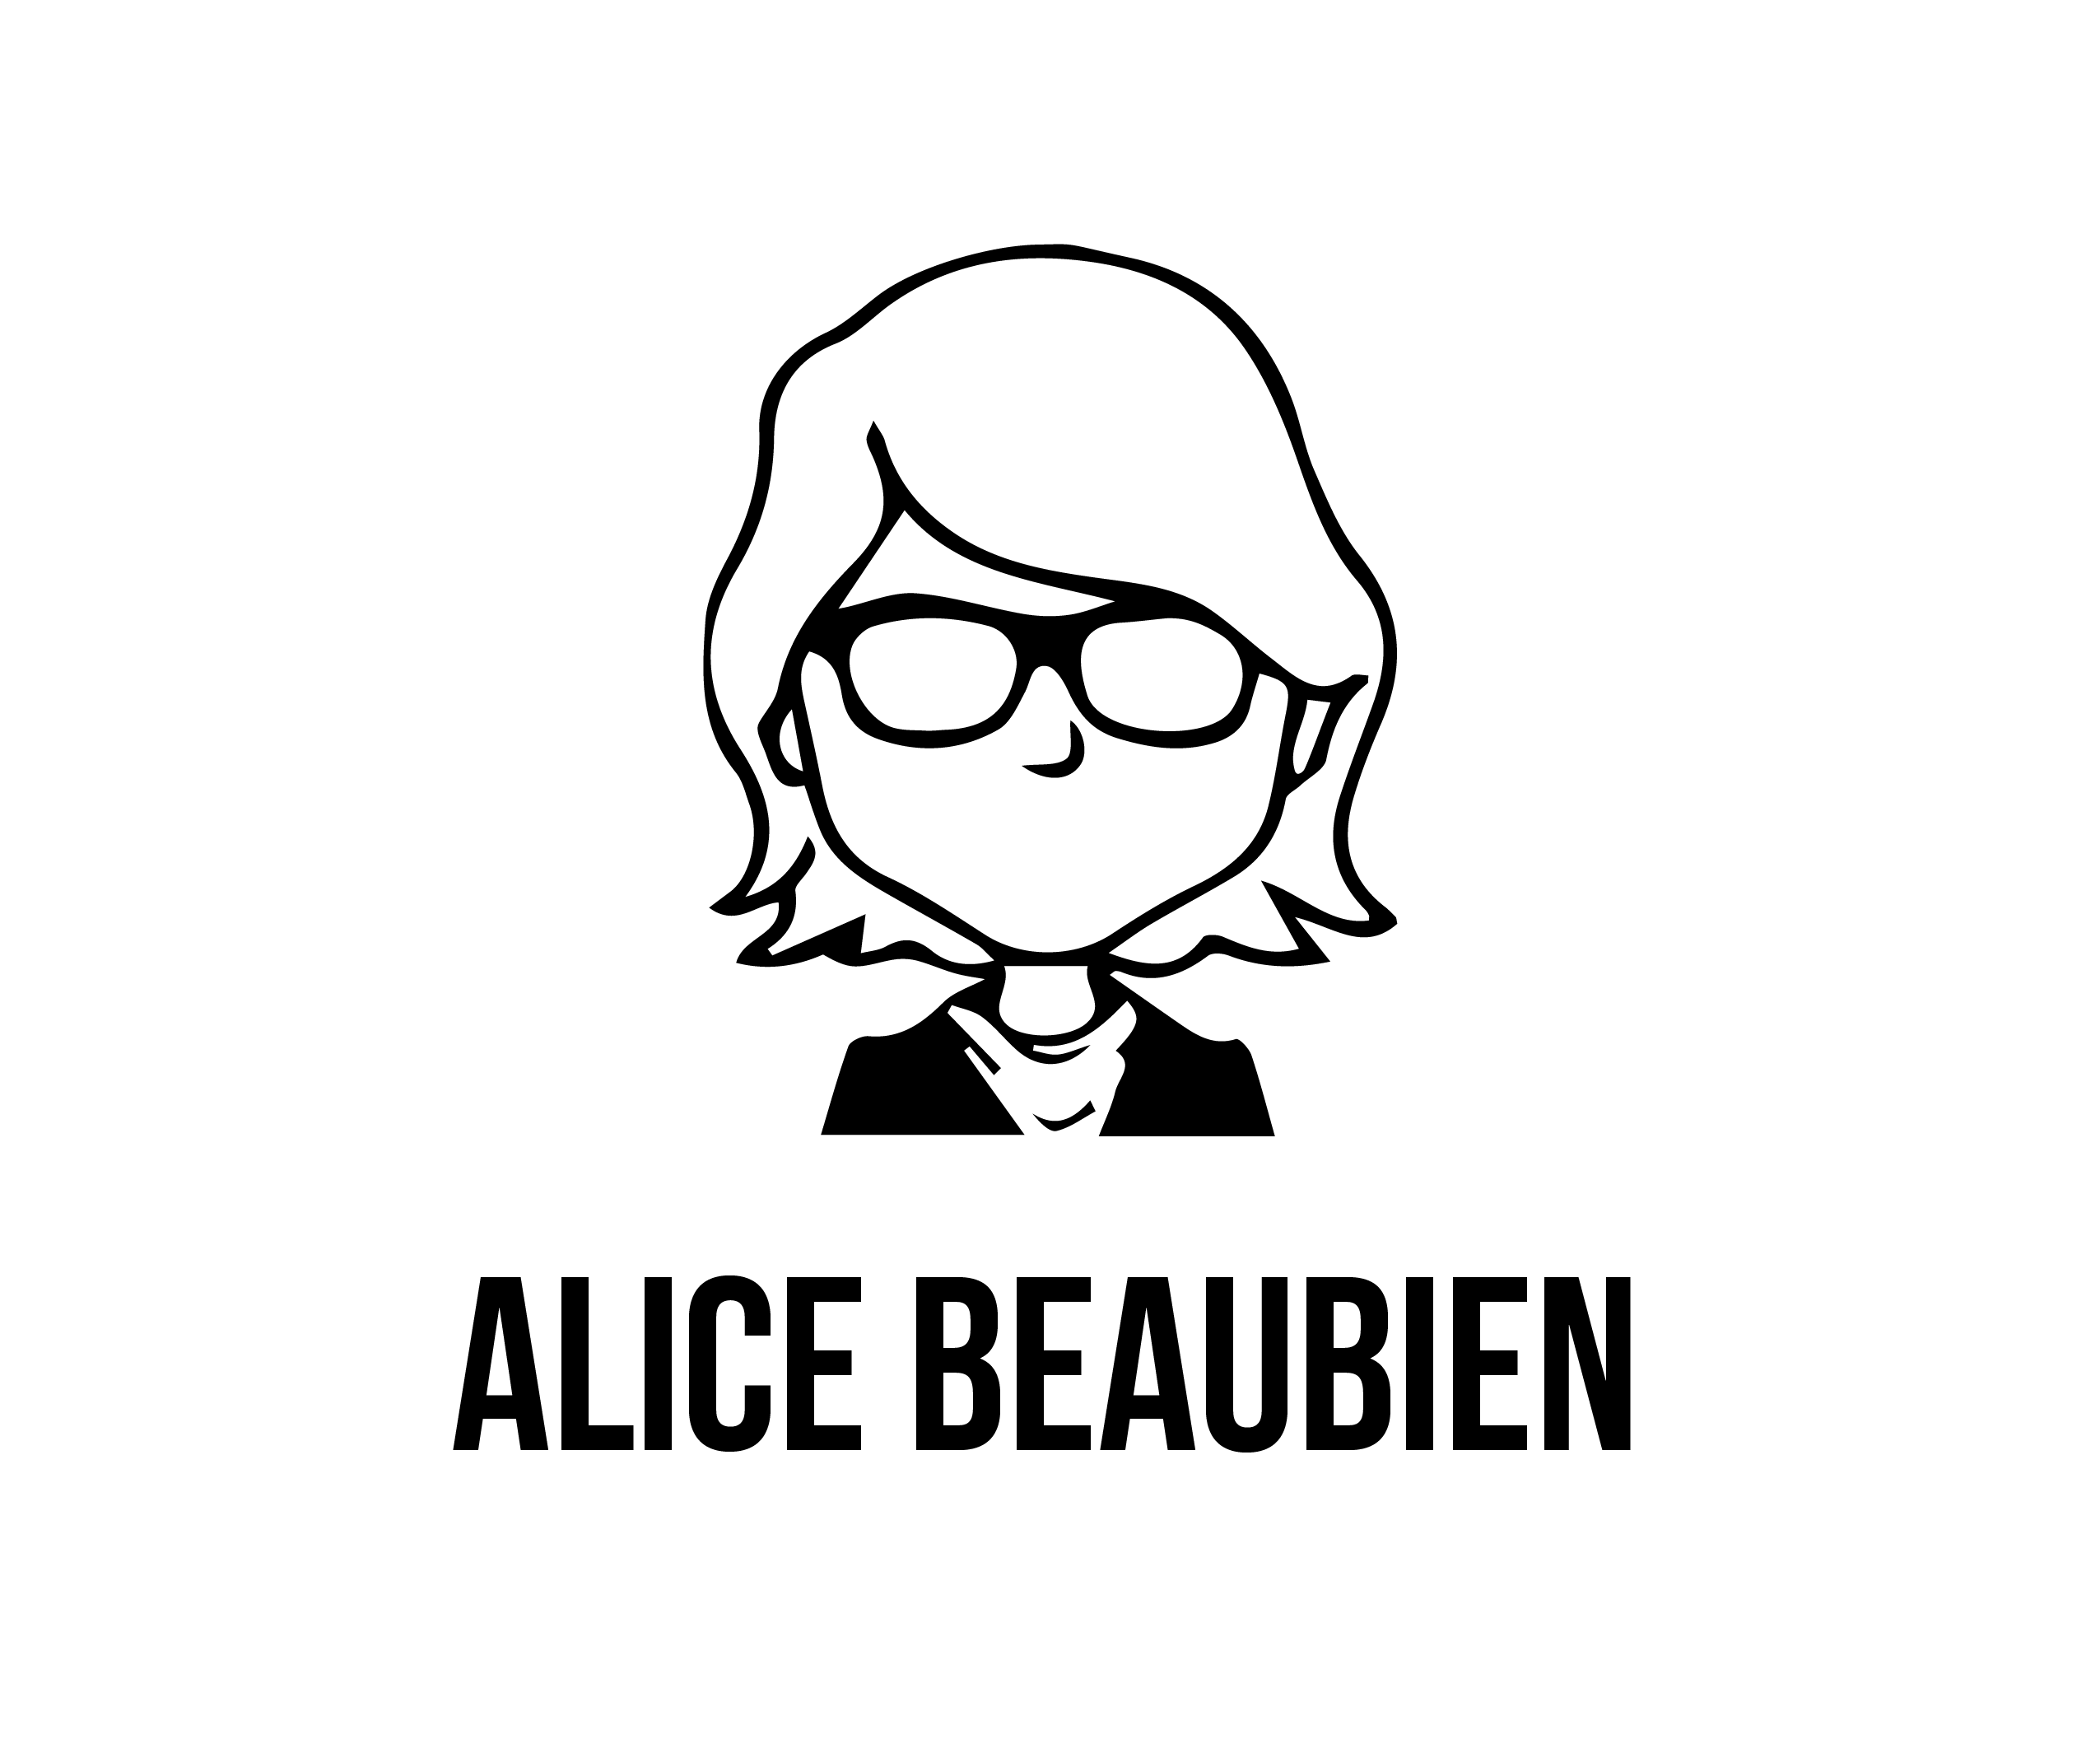 Alice Beaubien